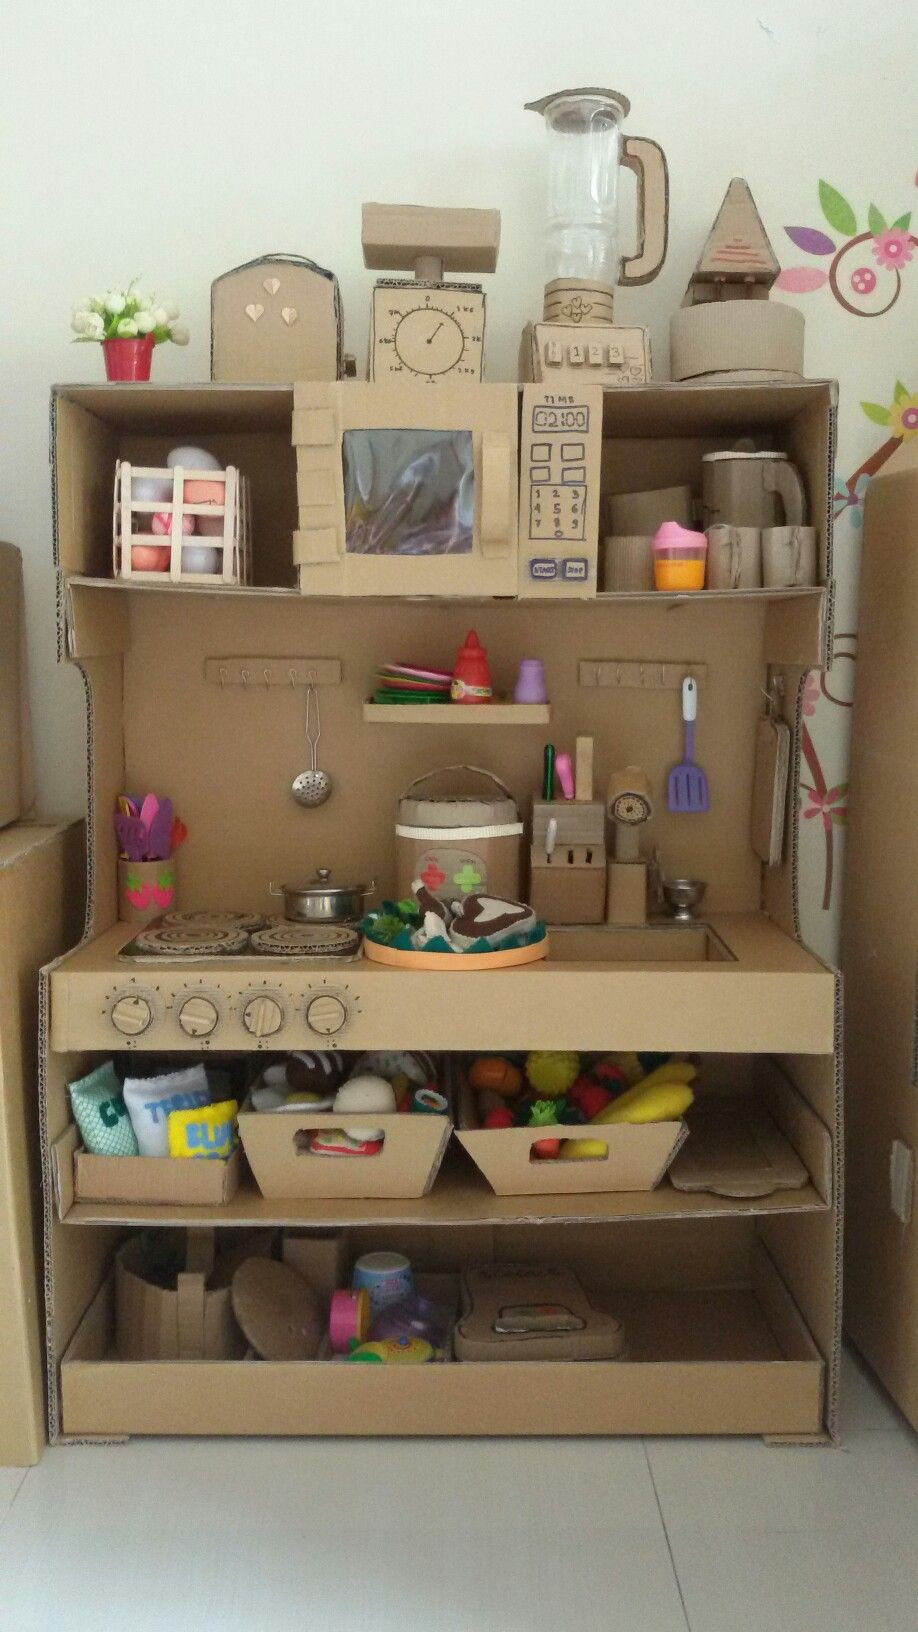 Kids Craft Kitchens
 Cardboard kitchen playset … DIY crafts